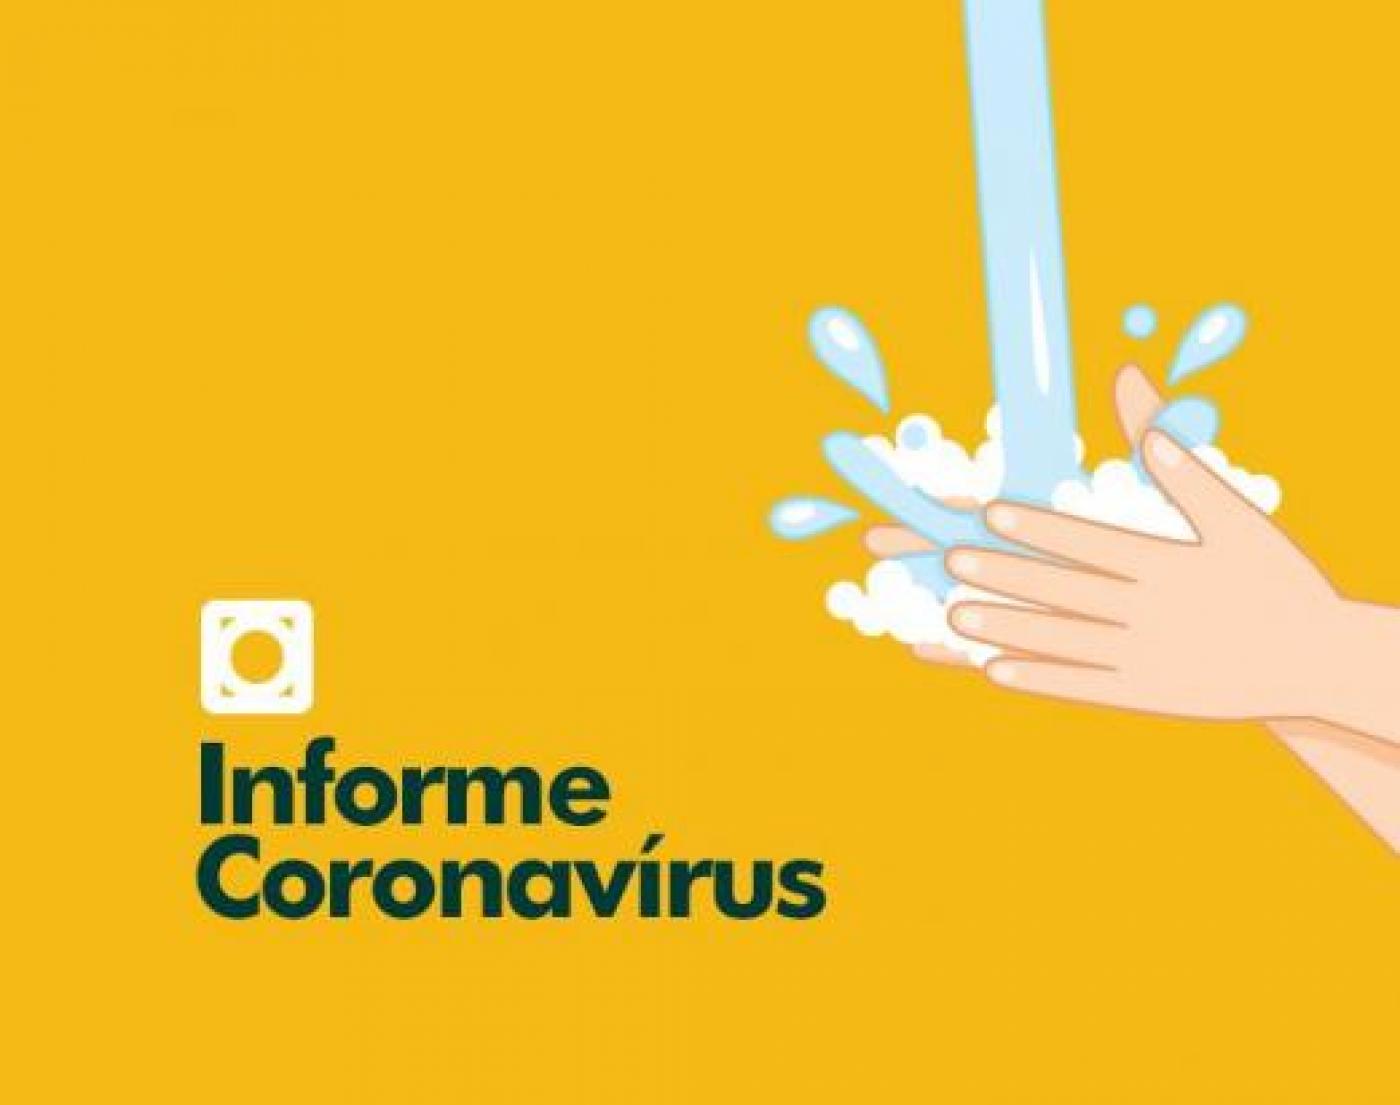 Card onde se lê Informe Coronavírus. A ilustração é de duas mãos sob um jato d'água. #Paratodosverem